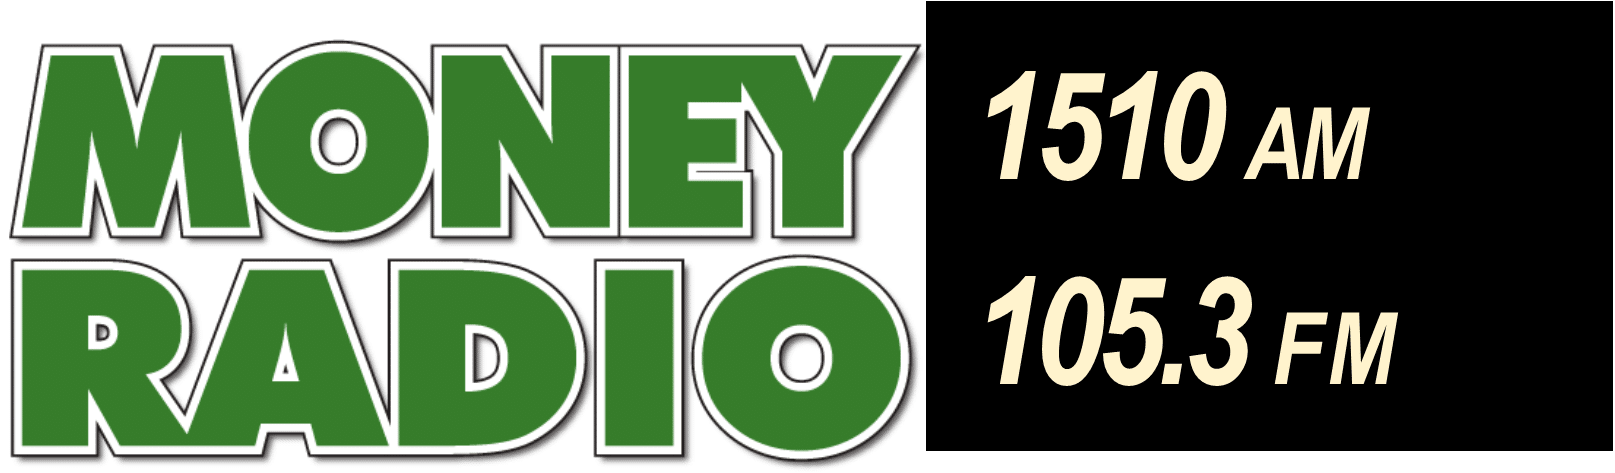 MONEY-RADIO-105.3-FM